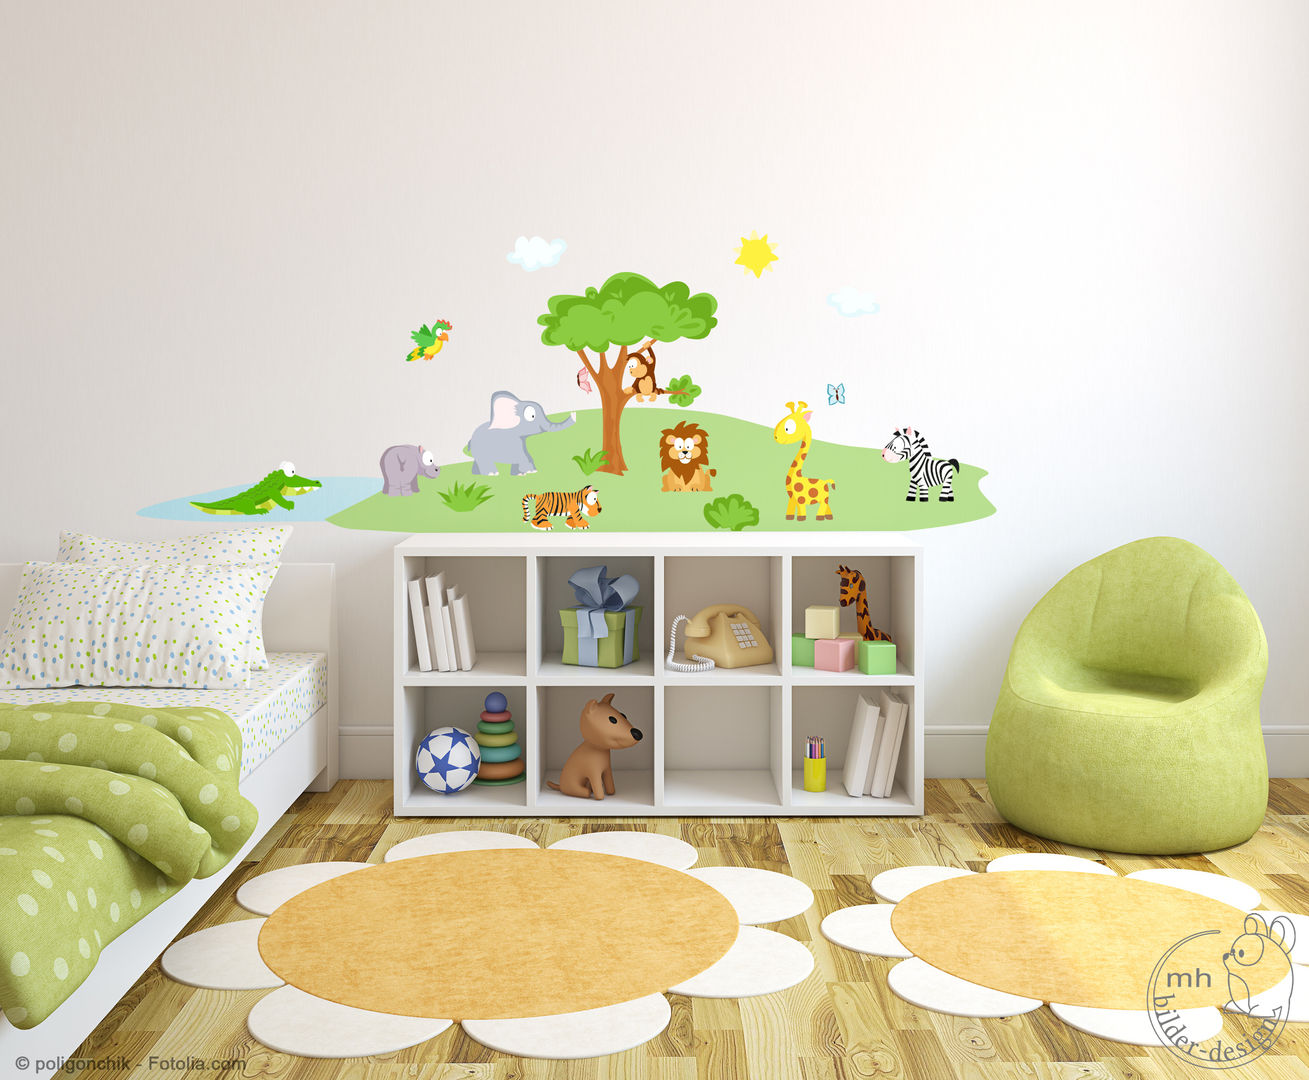 Wandtattoos - Dschungel im Kinderzimmer, MHBilder-Design MHBilder-Design Dormitorios infantiles Sintético Marrón Decoración y accesorios